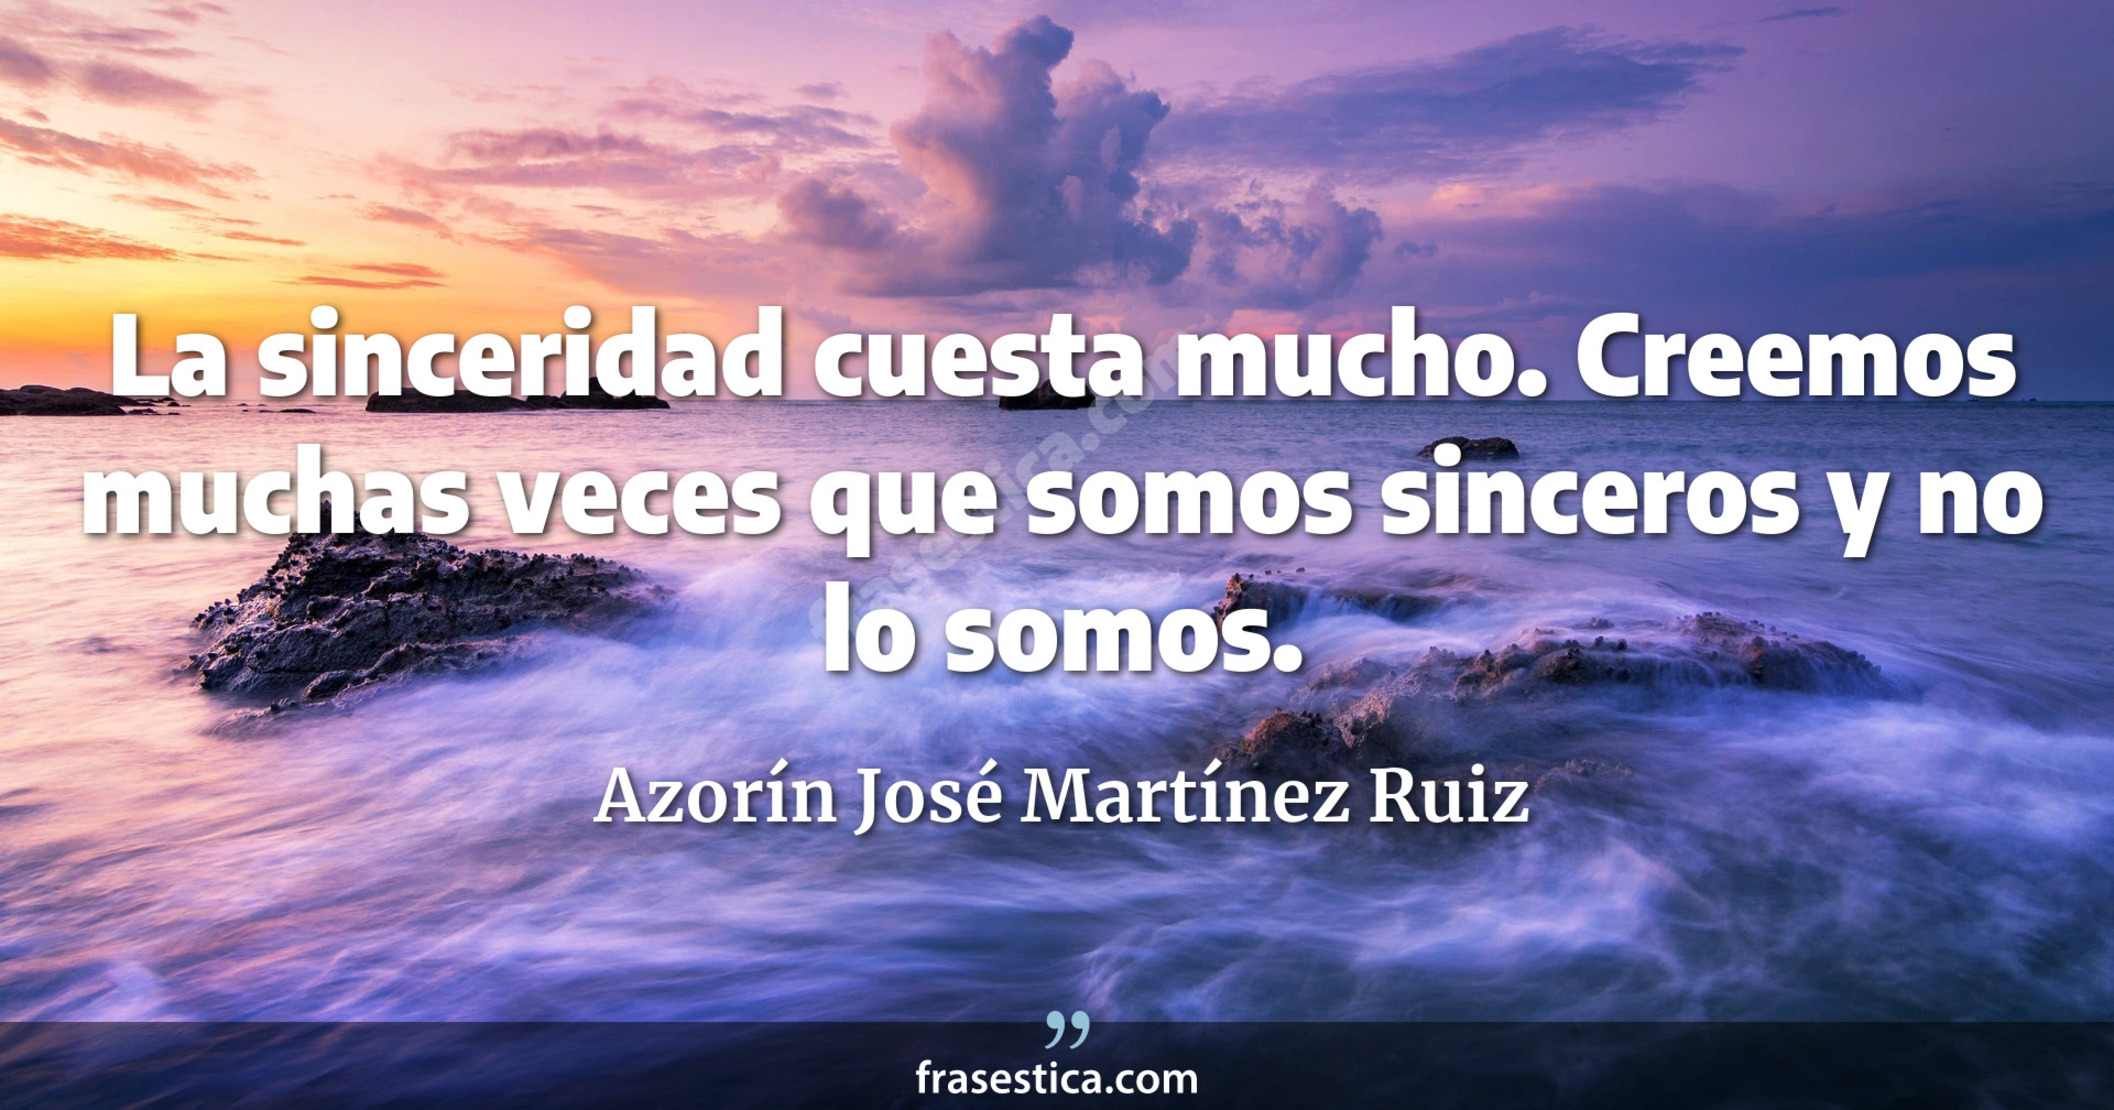 La sinceridad cuesta mucho. Creemos muchas veces que somos sinceros y no lo somos. - Azorín José Martínez Ruiz